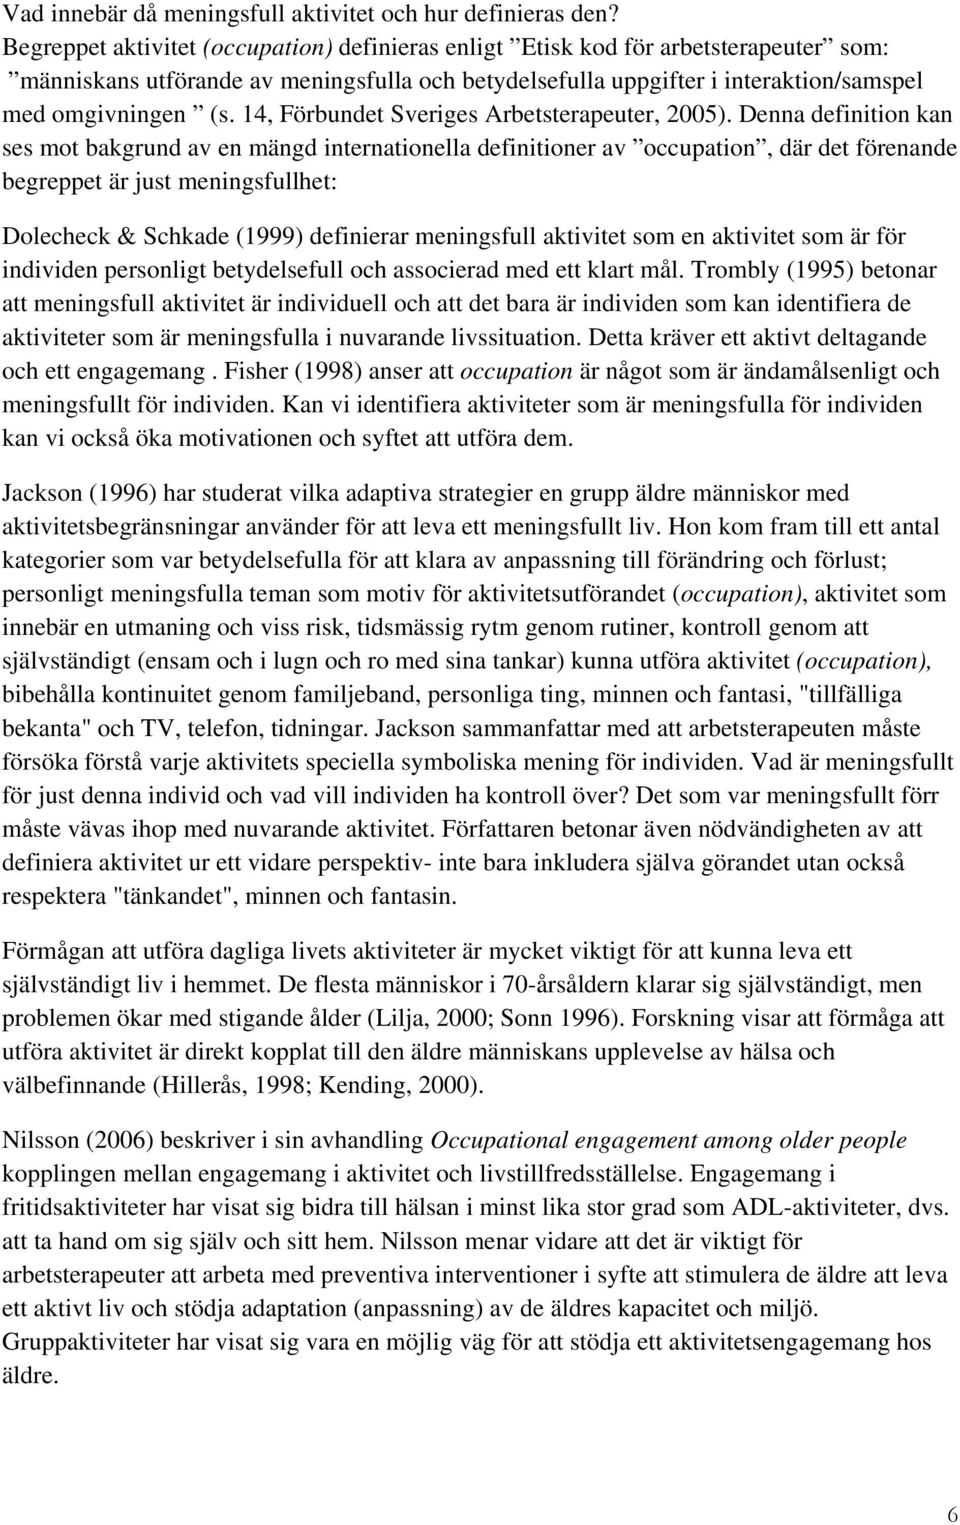 14, Förbundet Sveriges Arbetsterapeuter, 2005).